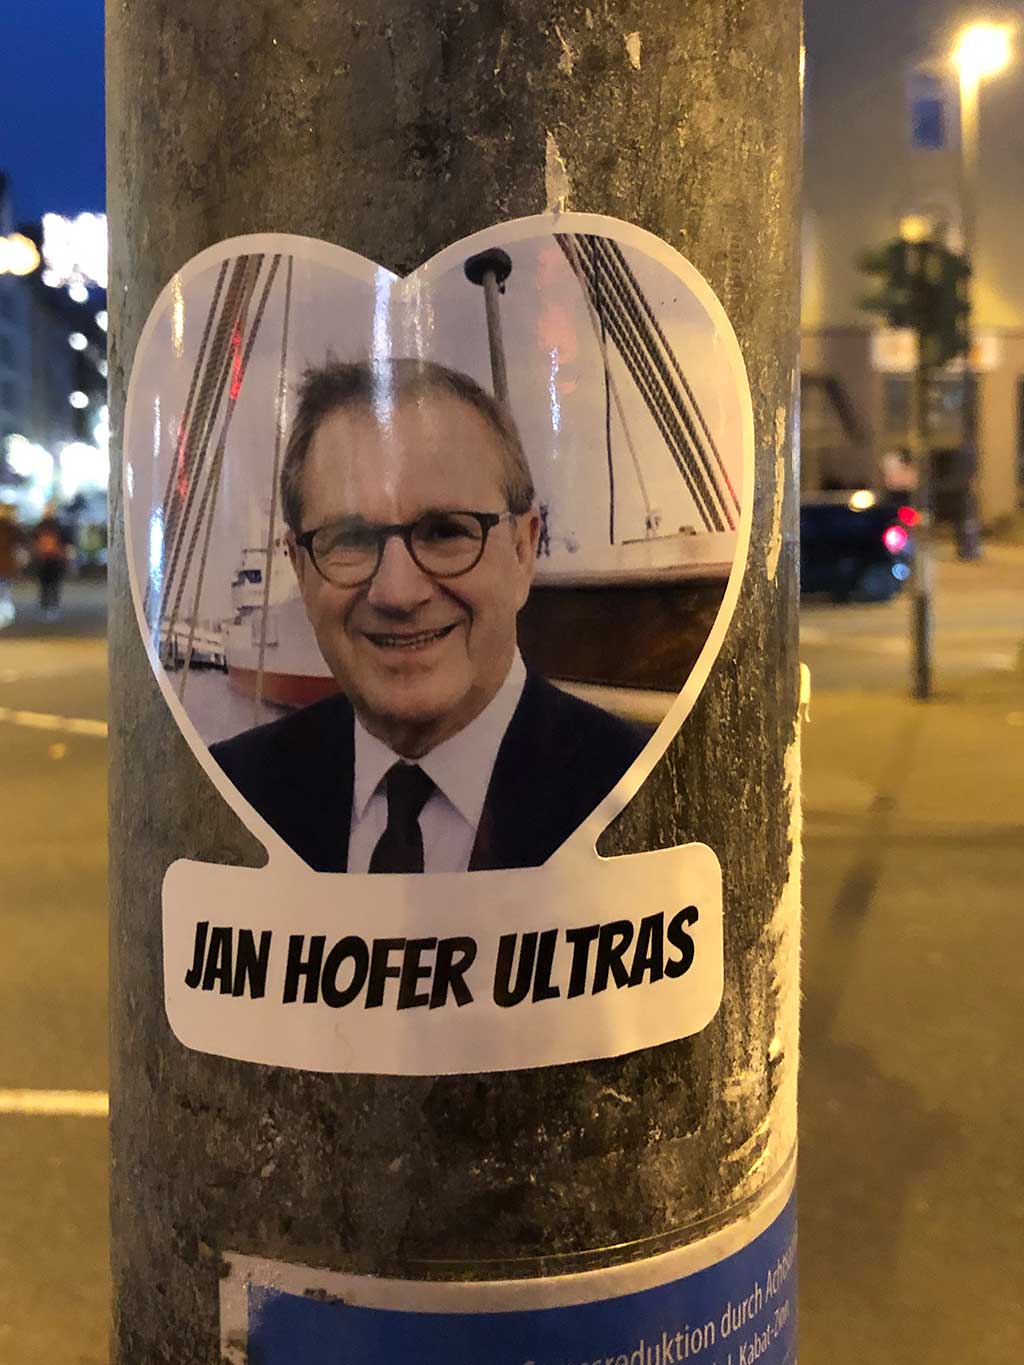 Jan Hofer Ultras